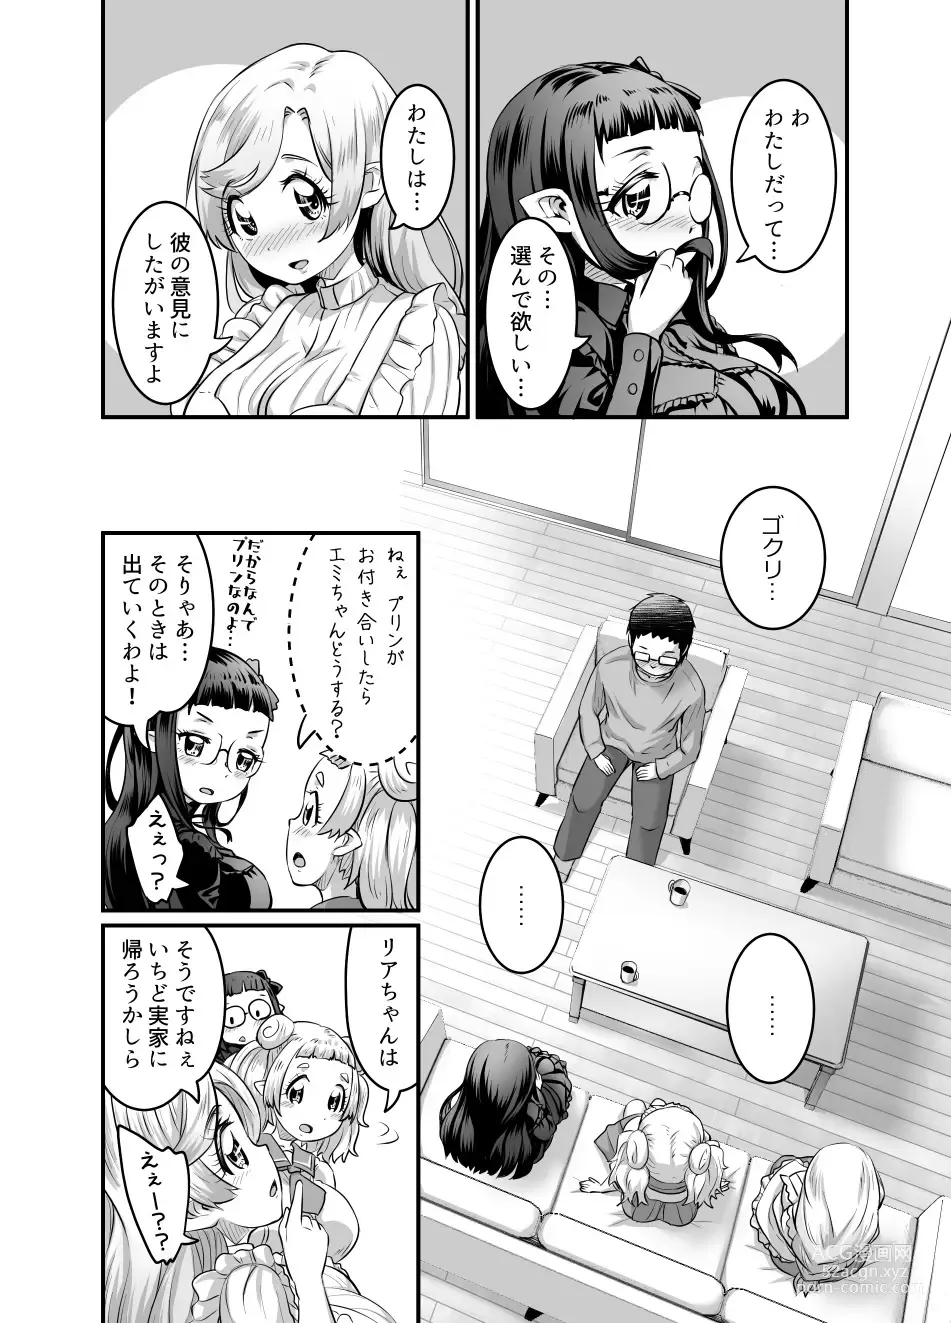 Page 252 of doujinshi Oppai Loli Elf-chan no Konkatsu